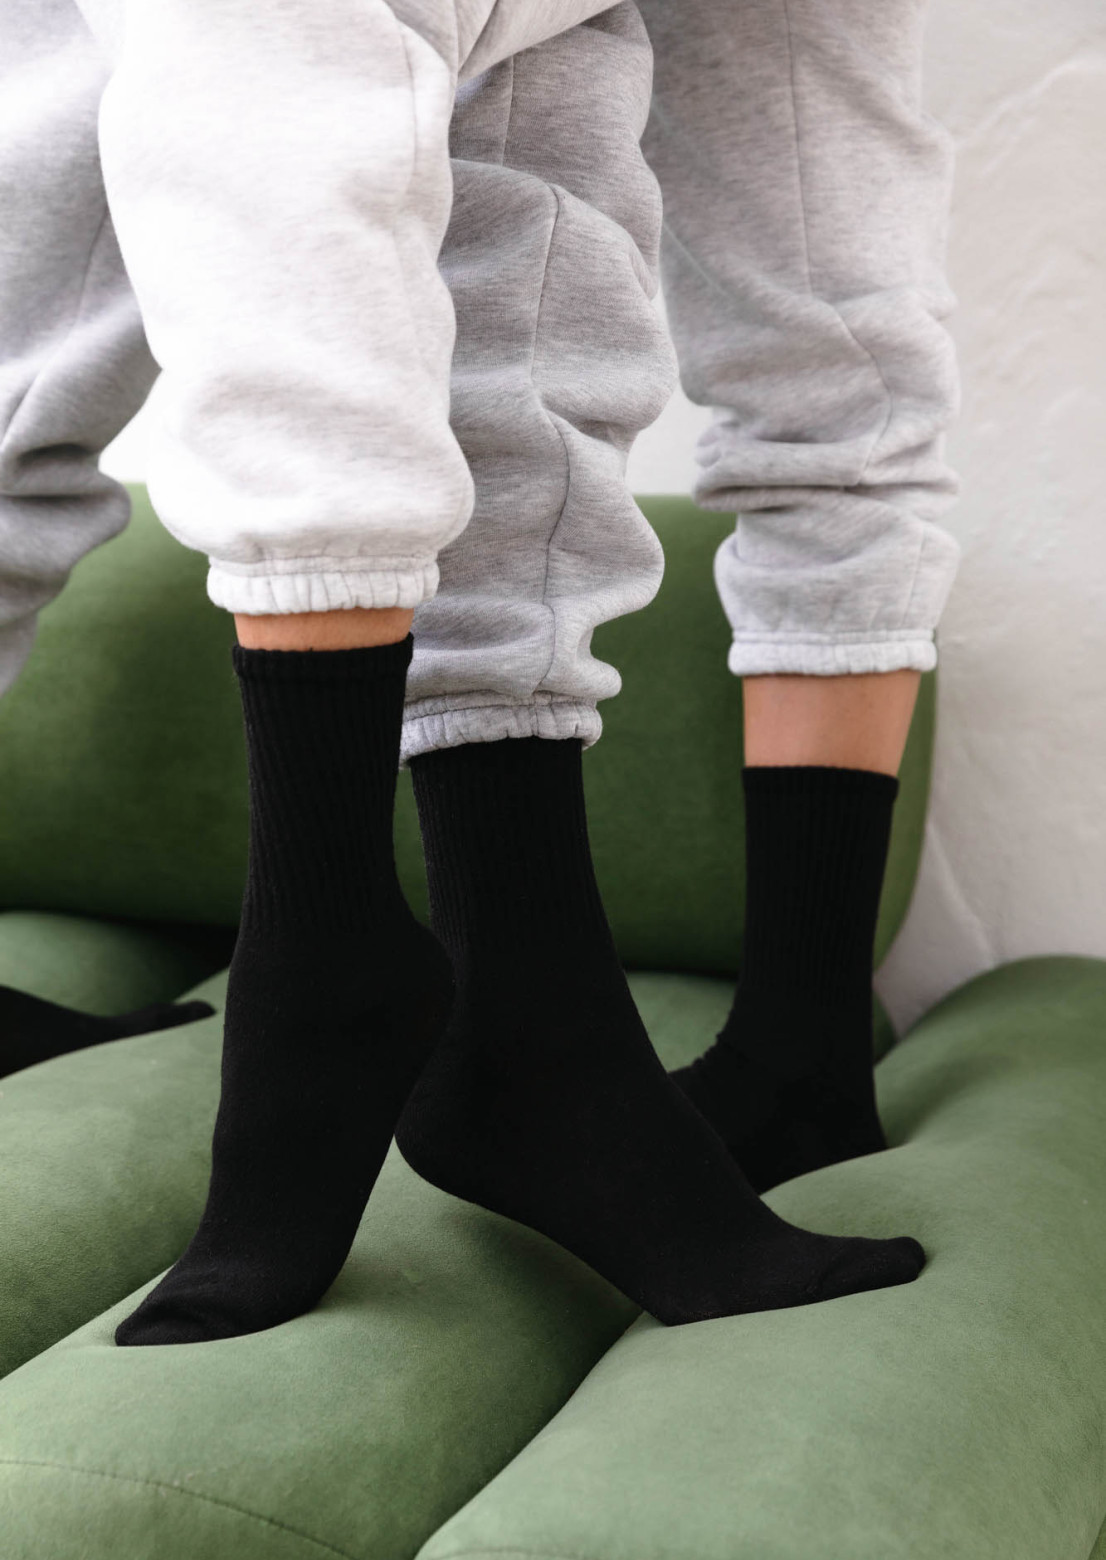 Black socks 